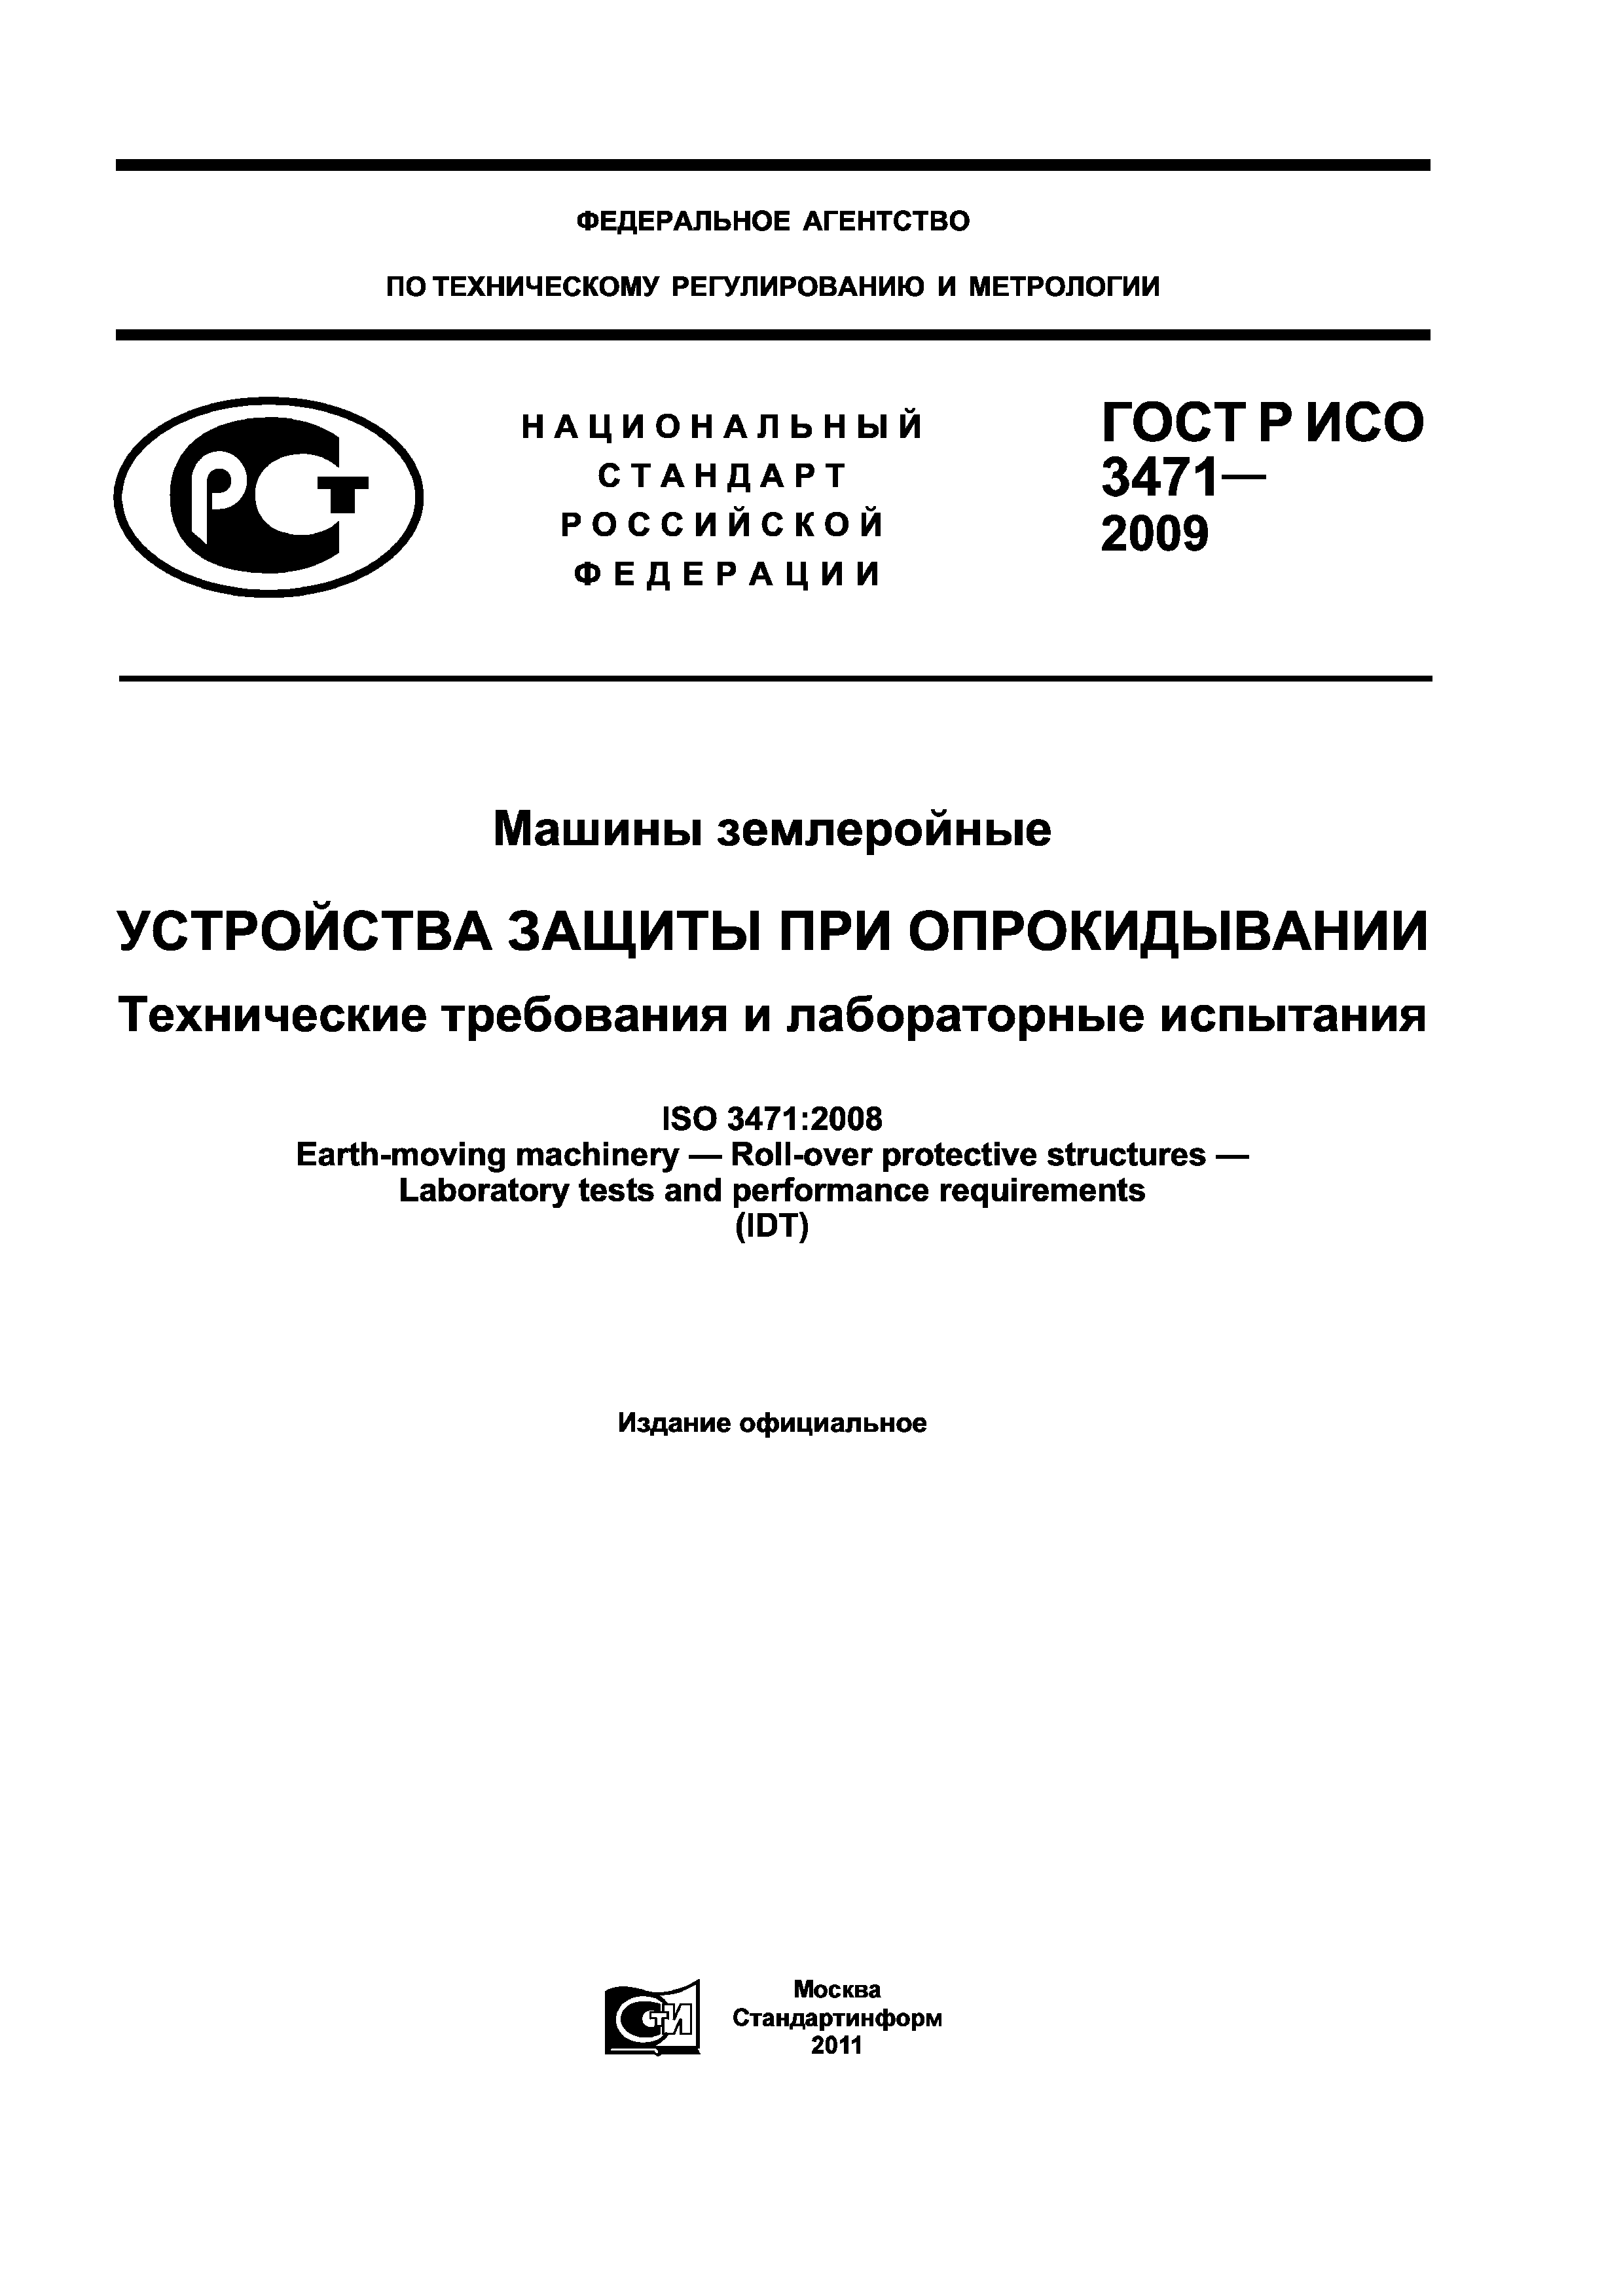 ГОСТ Р ИСО 3471-2009